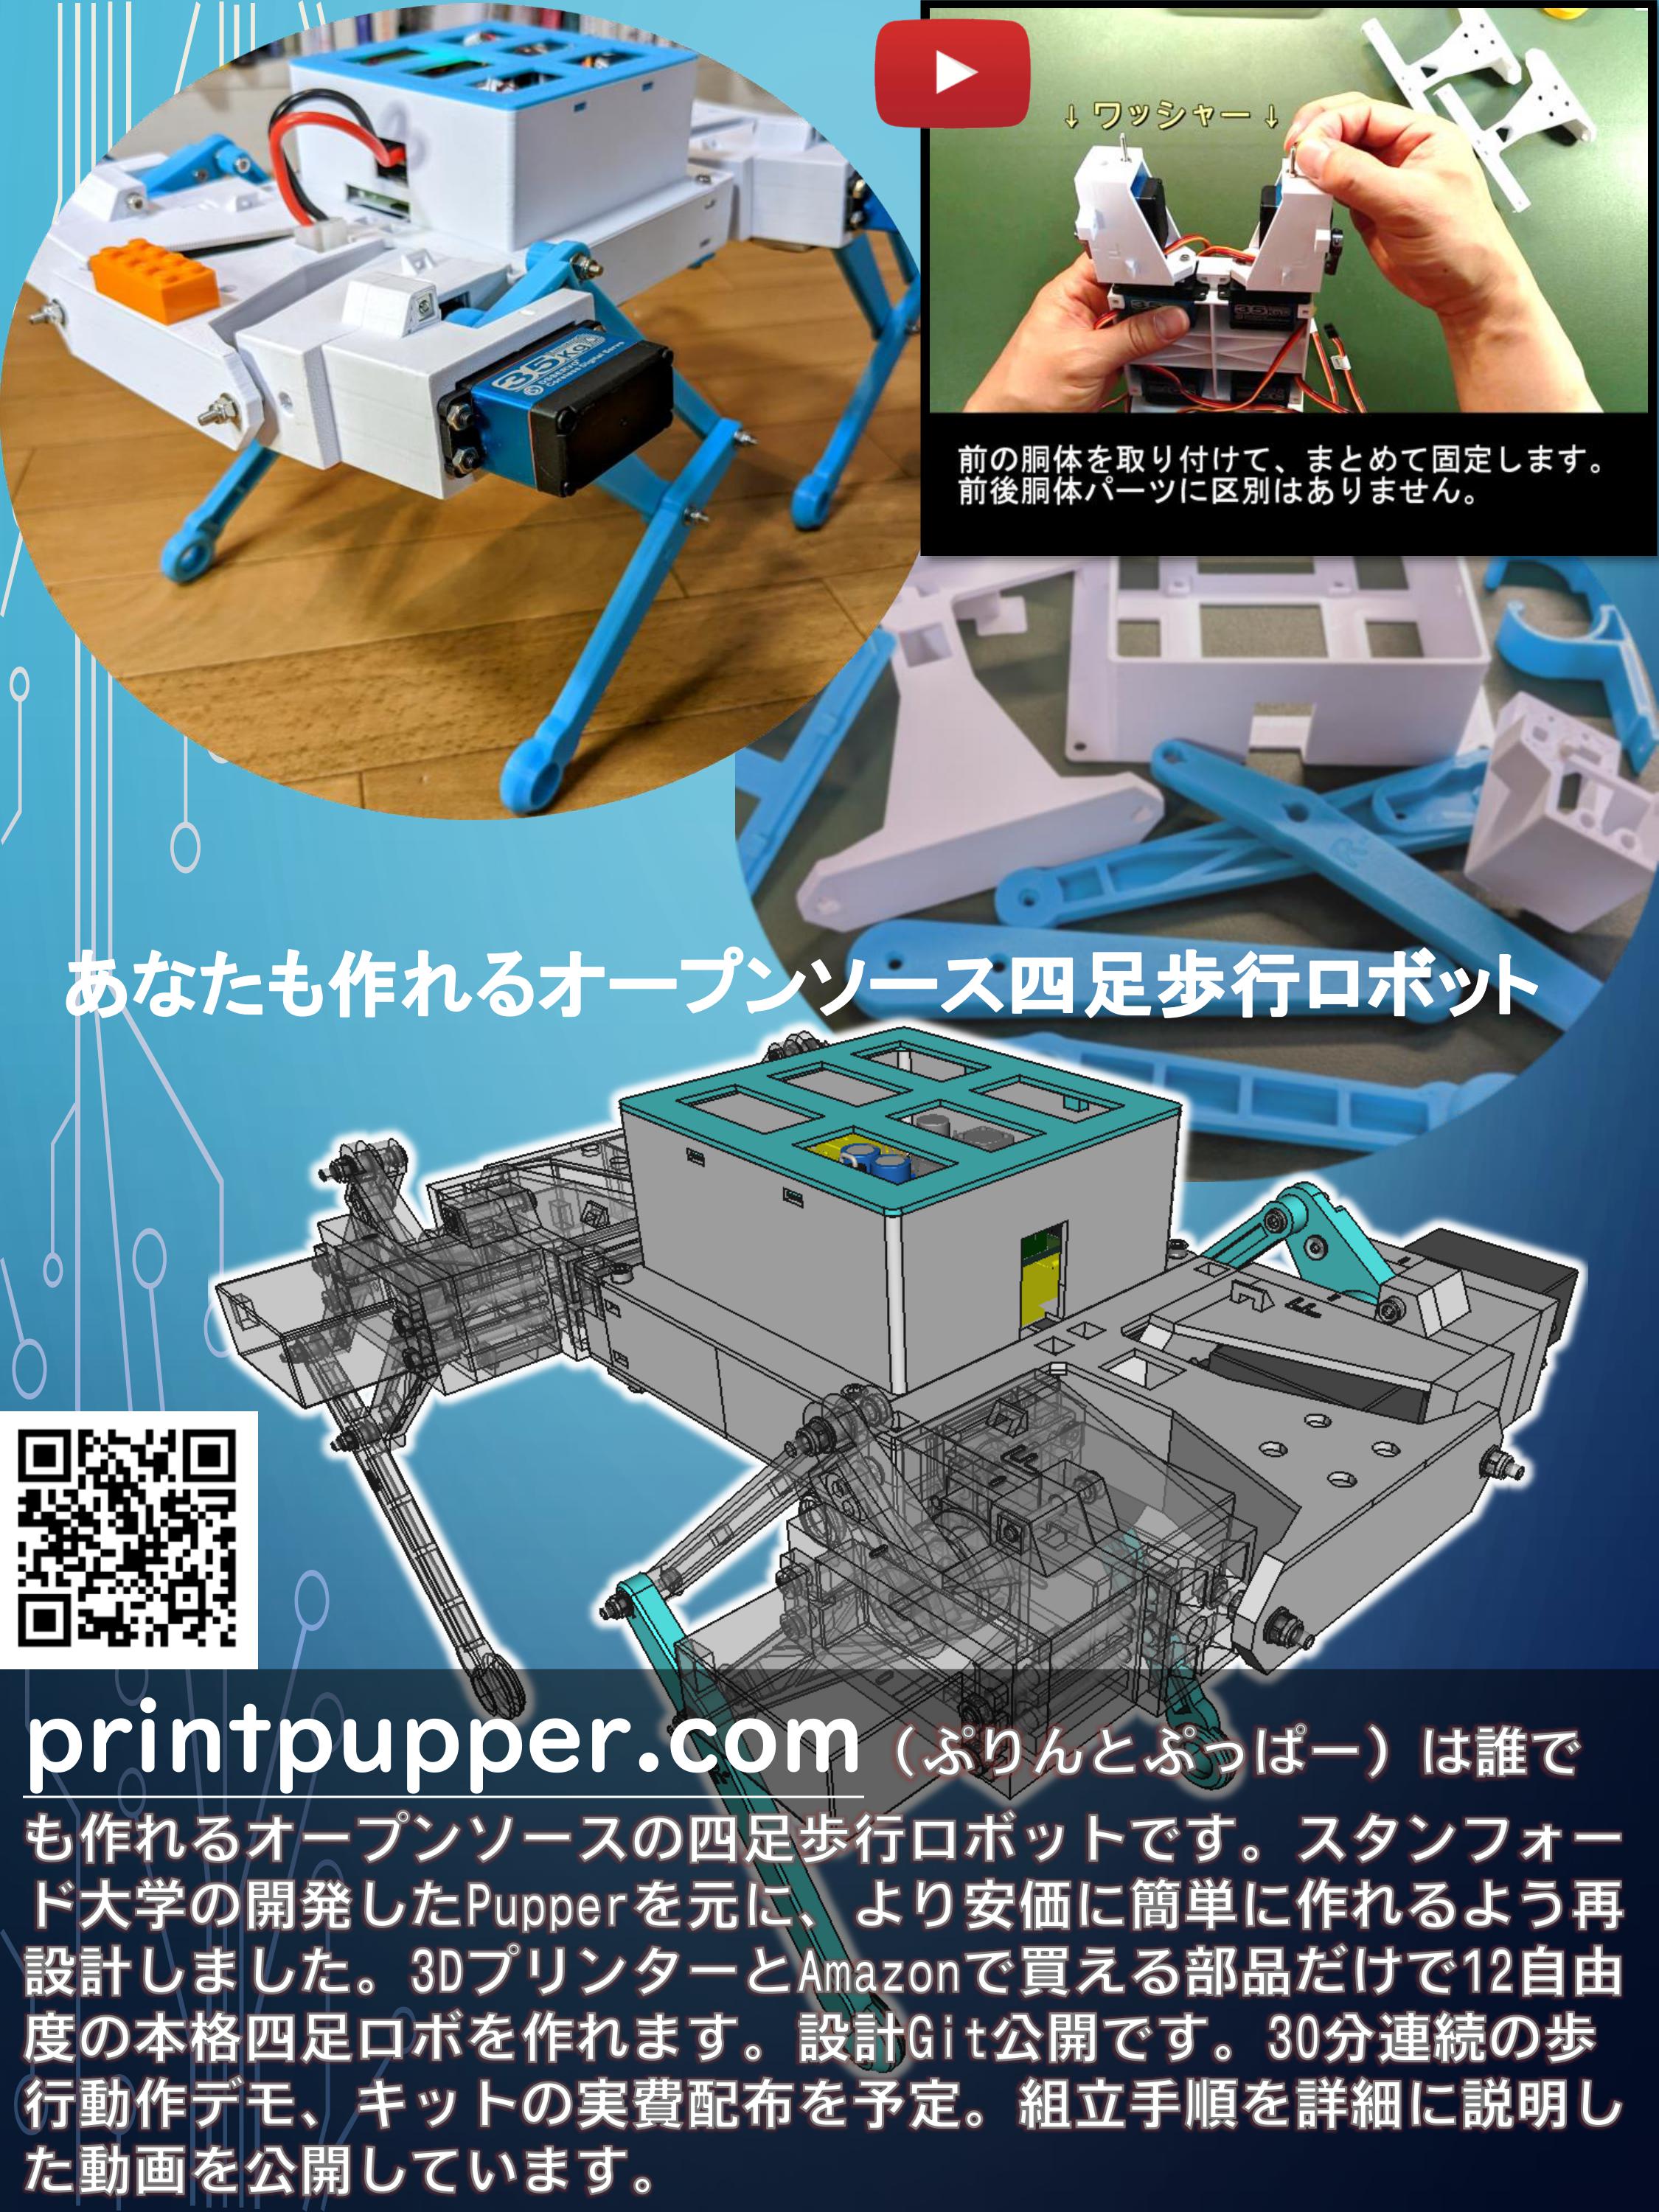 printpupper.com あなたも作れるオープンソース四足歩行ロボット